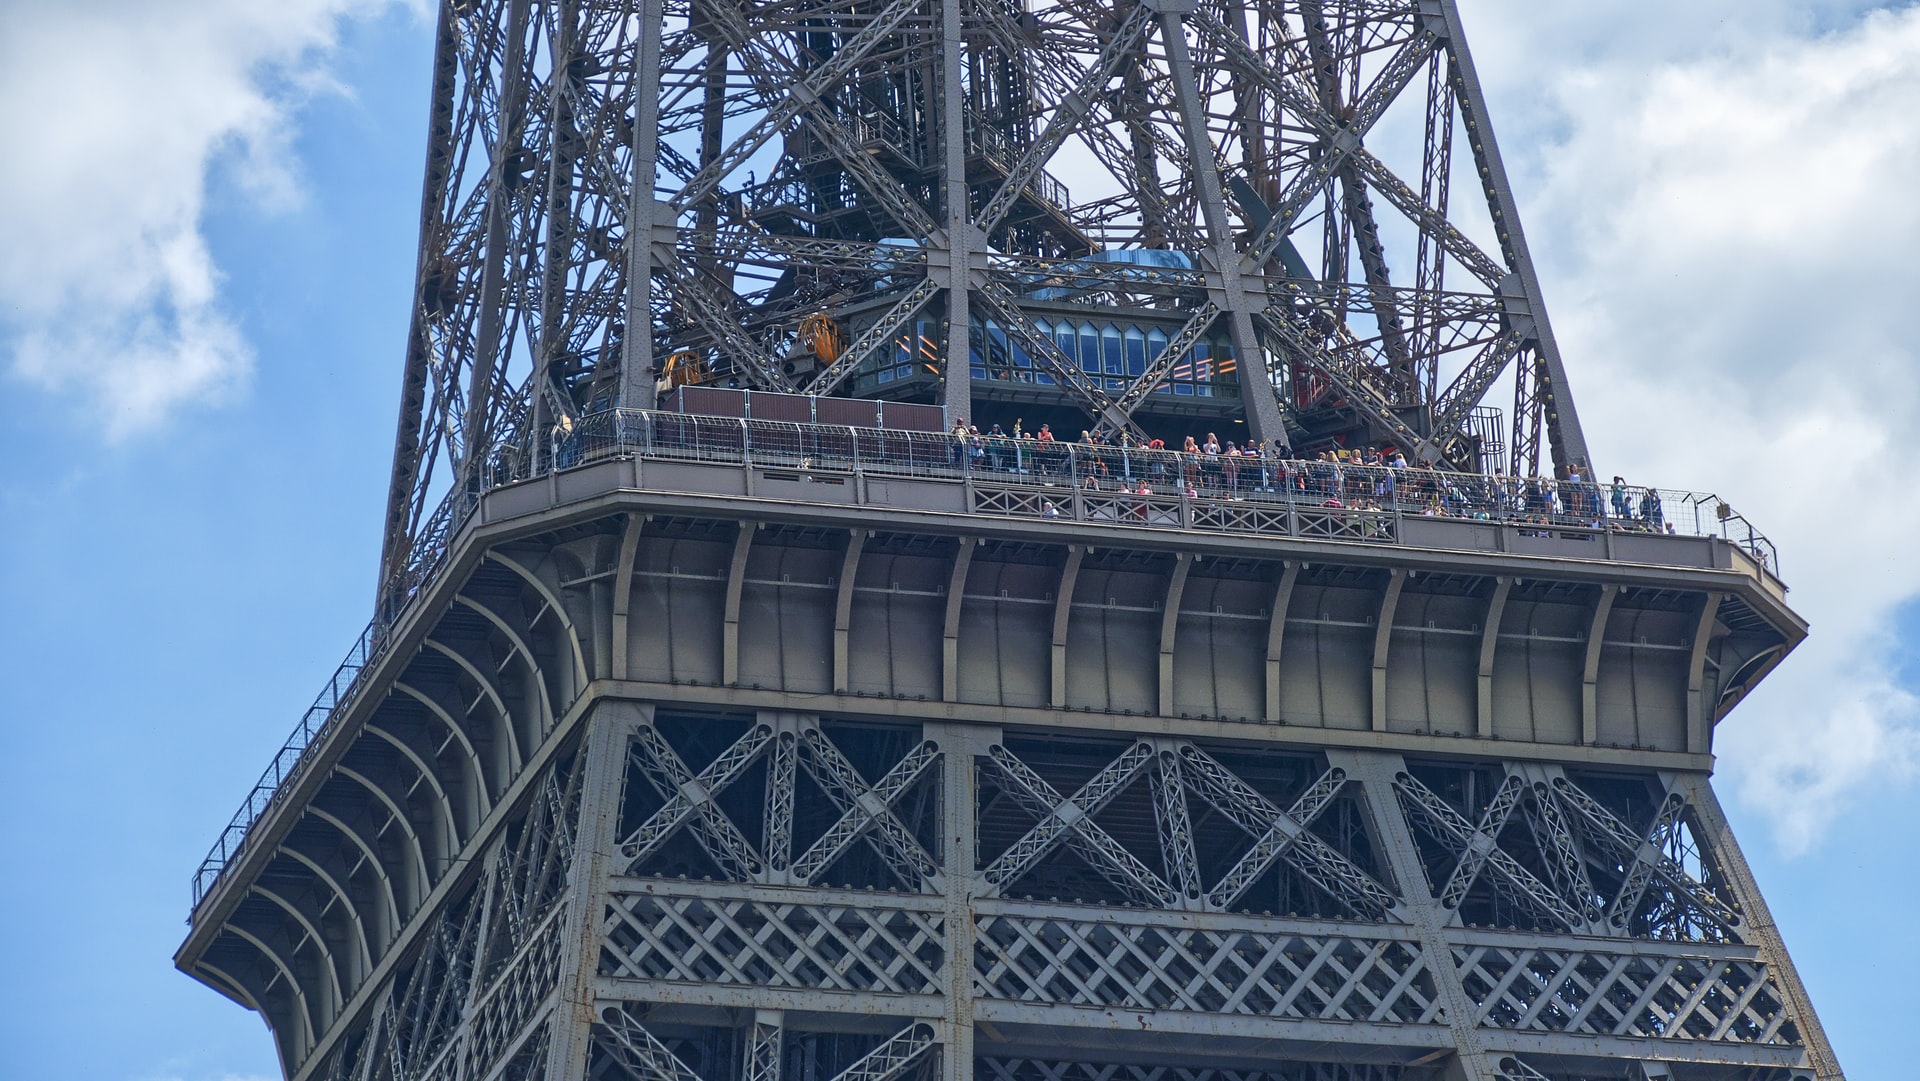 Eiffel Tower Tour